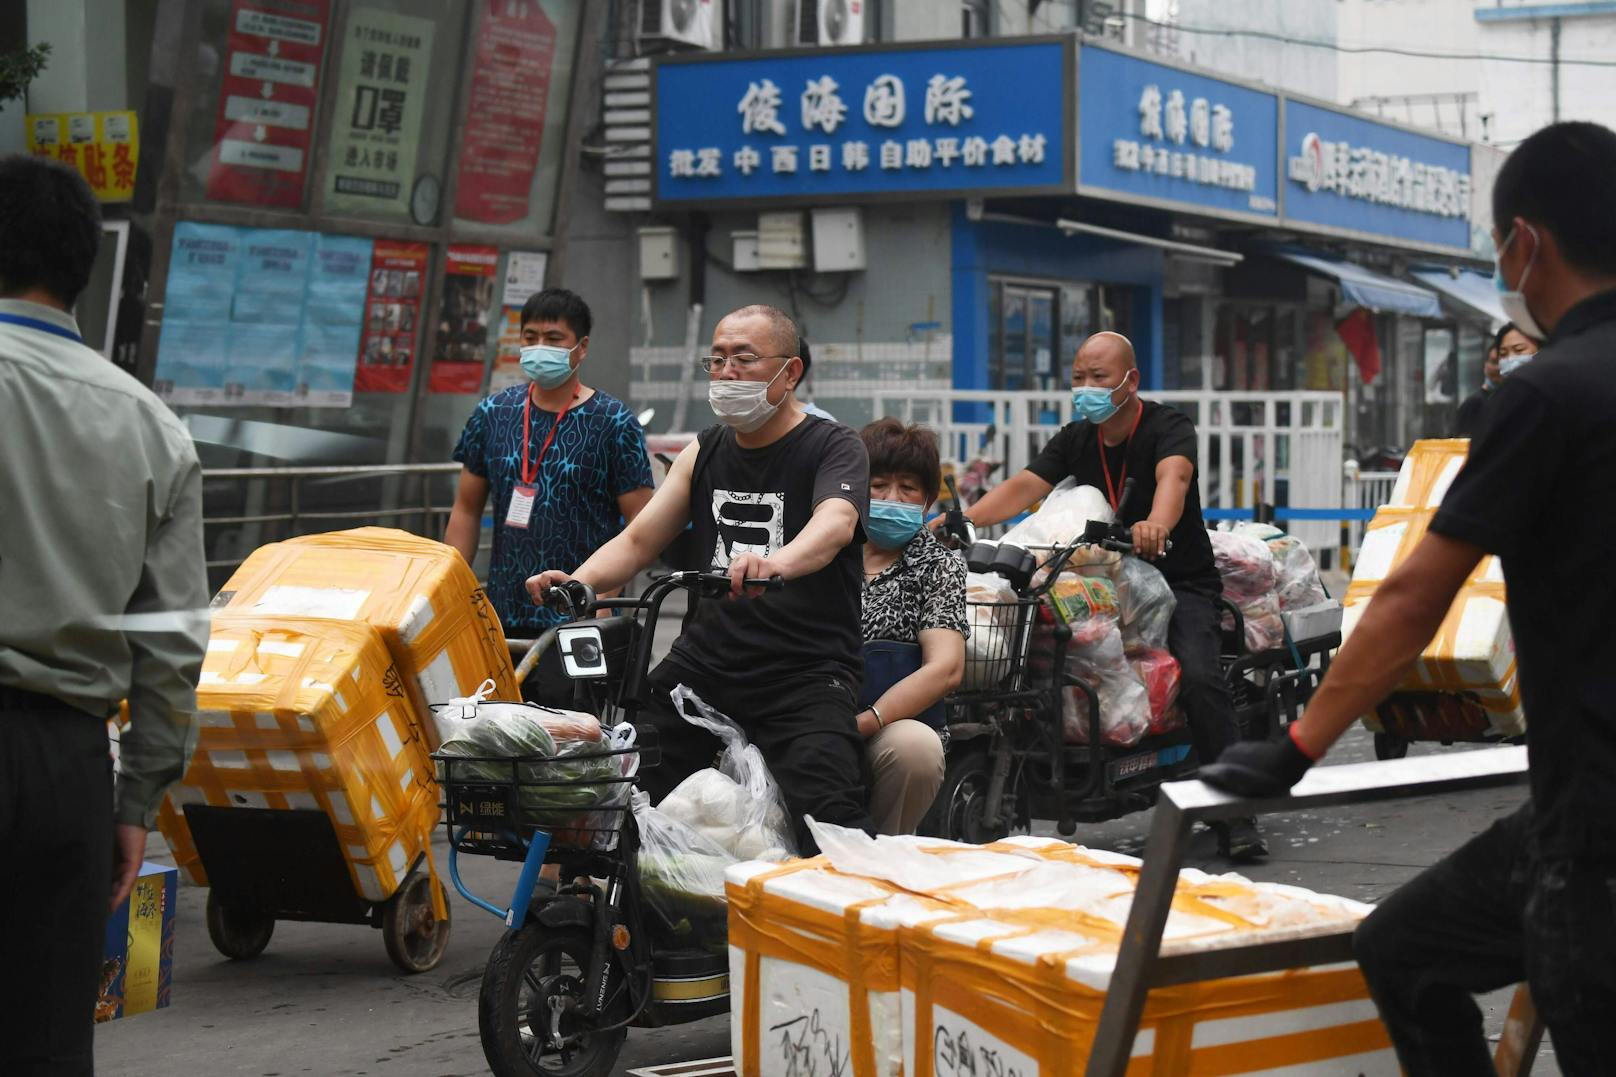 Die neuen Infektionen stehen laut den Behörden im Zusammenhang mit dem Xinfadi-Fleischmarkt in der chinesischen Hauptstadt.